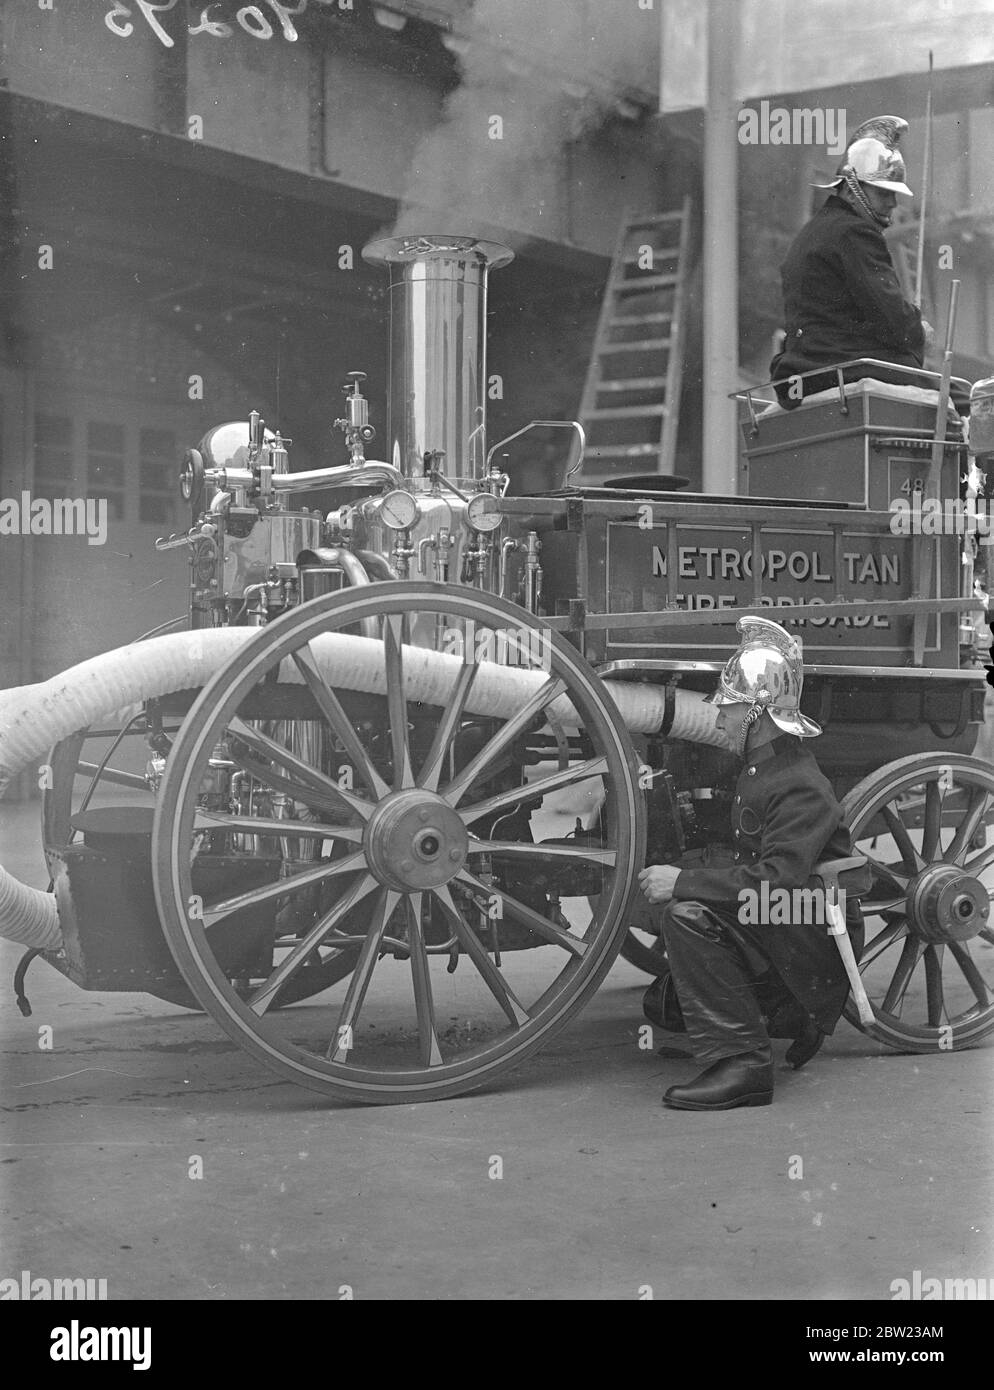 Les anciennes et nouvelles méthodes de lutte contre les incendies ont été démontrées par la brigade des pompiers de Londres lors d'une exposition devant le chef des pompiers de toutes les régions d'Angleterre au quartier général de la brigade à Londres. Des appareils d'incendie des siècles passés et l'équipement le plus à jour ont été utilisés pour l'affichage. Pompiers préparant un vieux moteur de feu à vapeur pour l'exposition. 13 octobre 1937. Banque D'Images